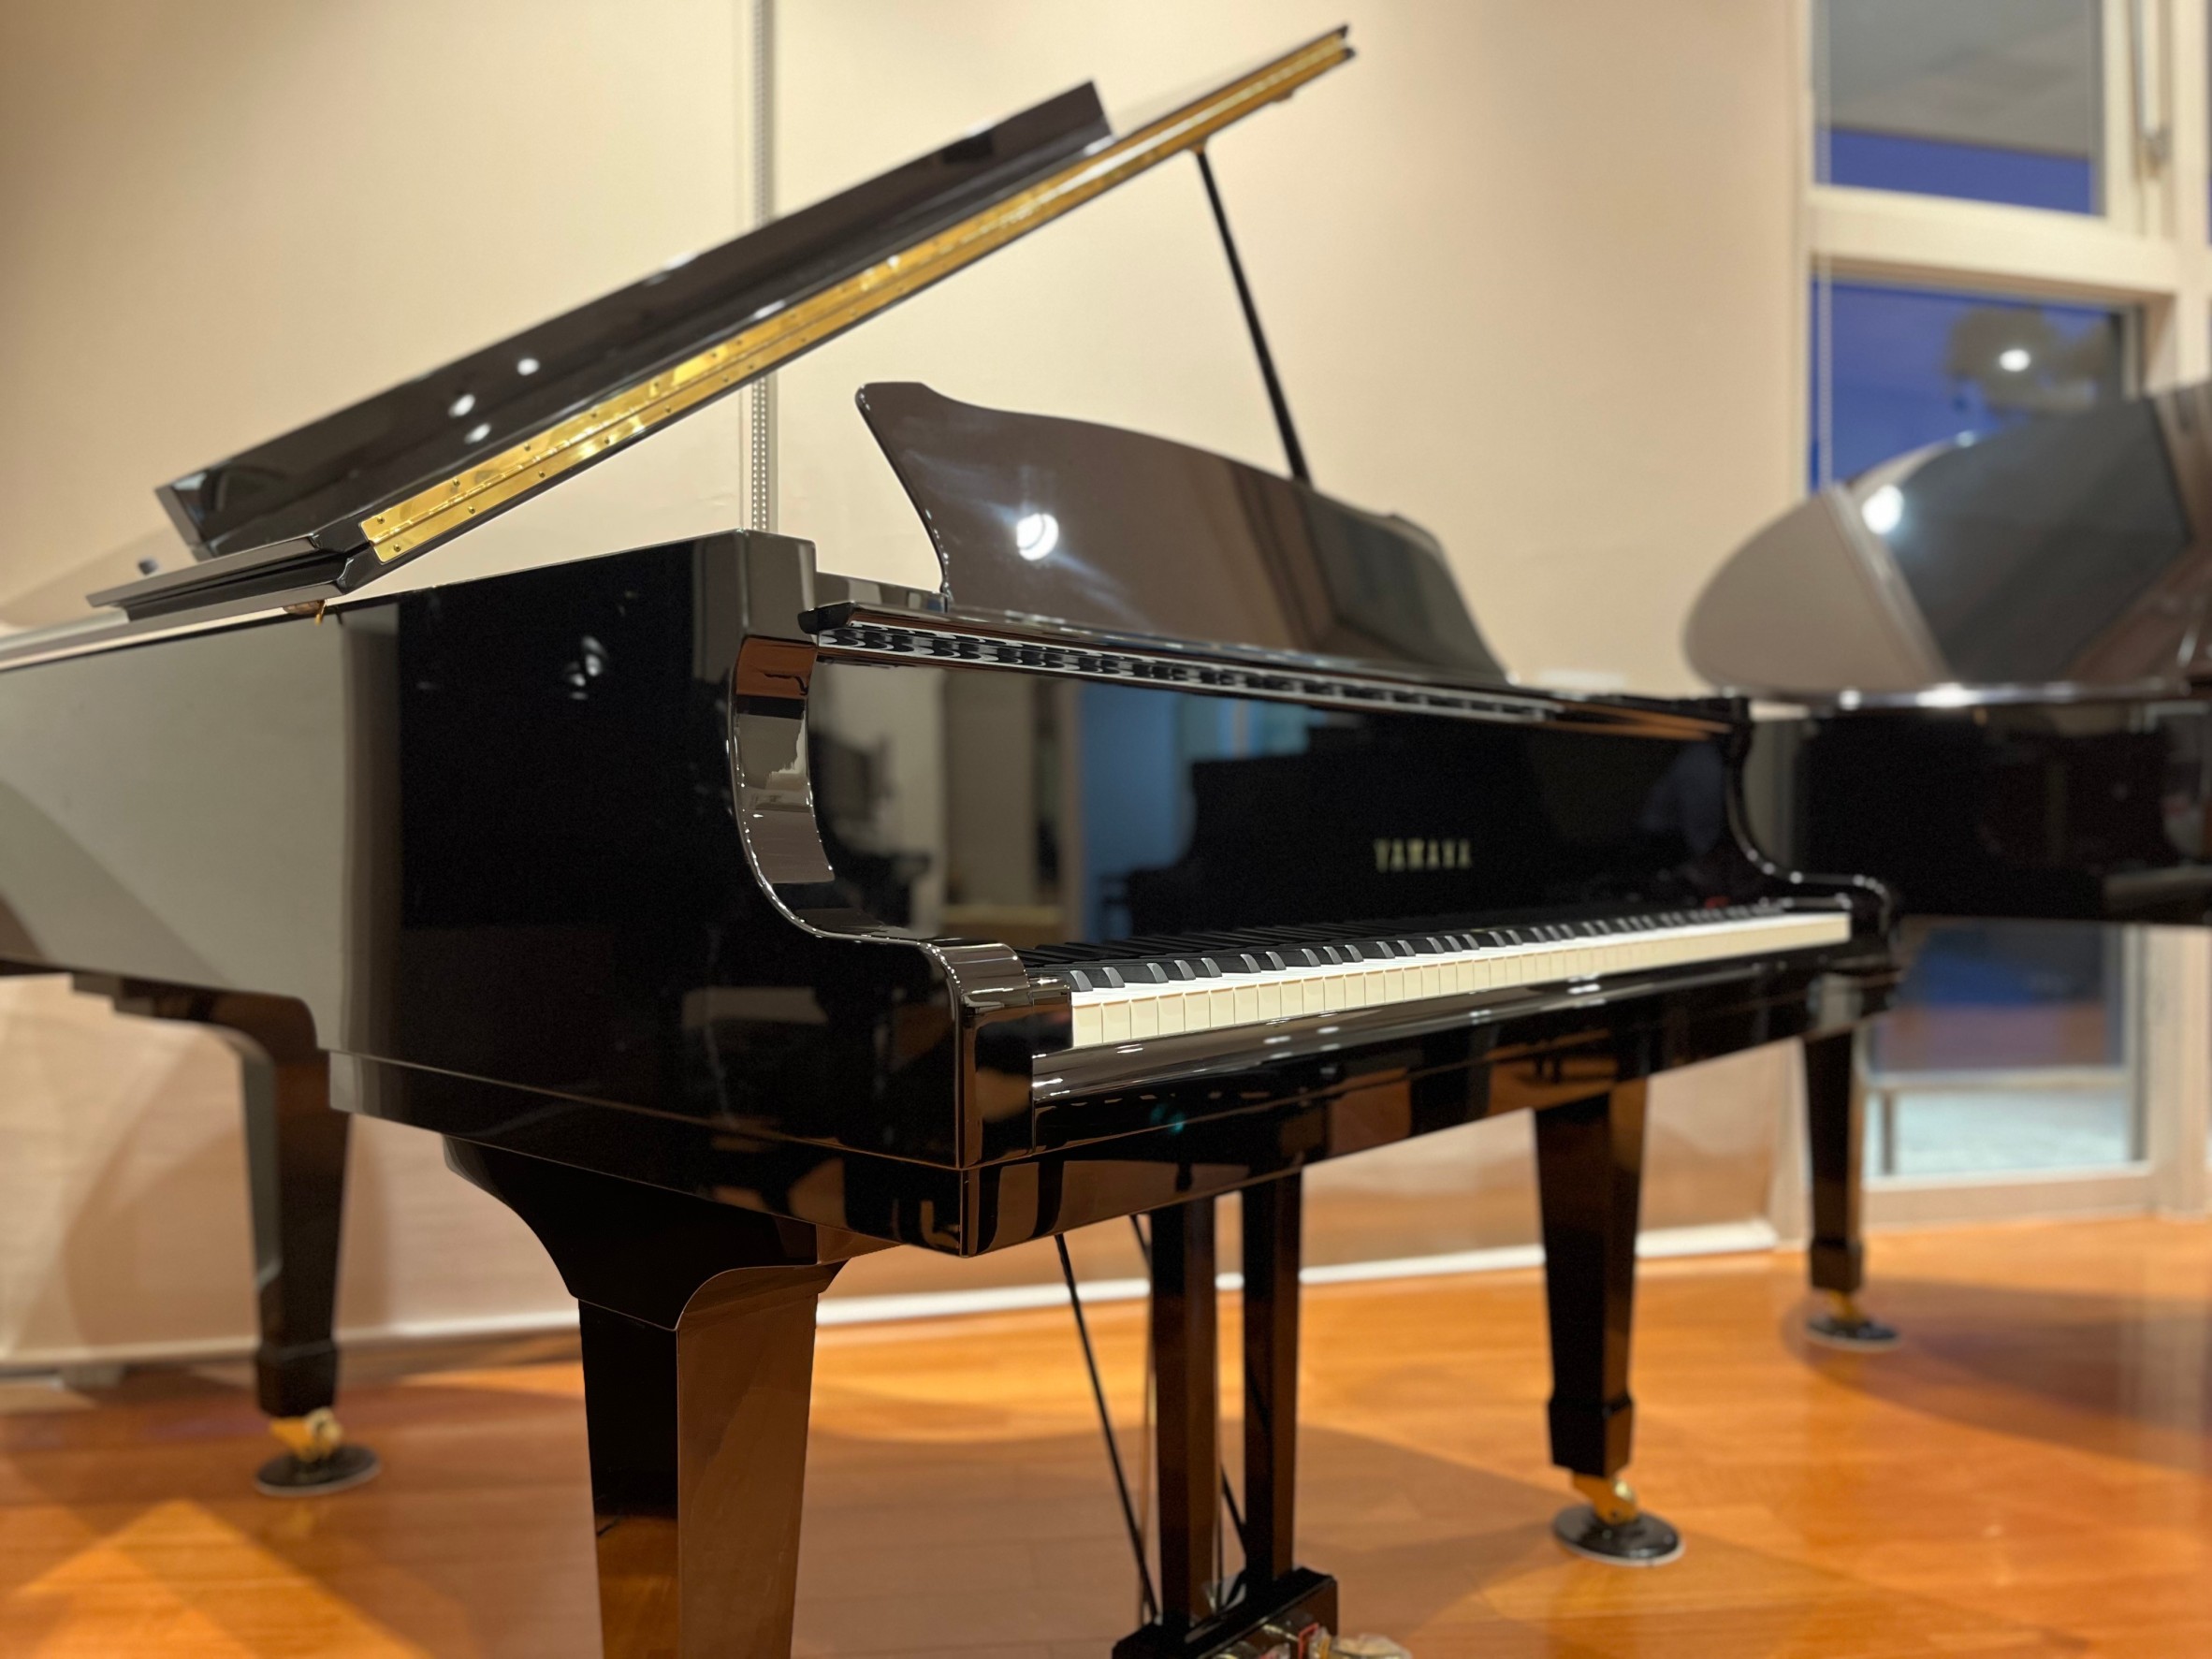 島村楽器エミフルMASAKI店では、人気のグランドピアノYAMAHA C3(2008年製)を展示しております。年式も新しく、長くご愛用いただける一台となっております。愛媛県でC3をお探しの方はぜひ当店へ。セミナールームにてゆっくりとお試しくださいませ。 YAMAHA　C3　2008年製 ￥1,925 […]